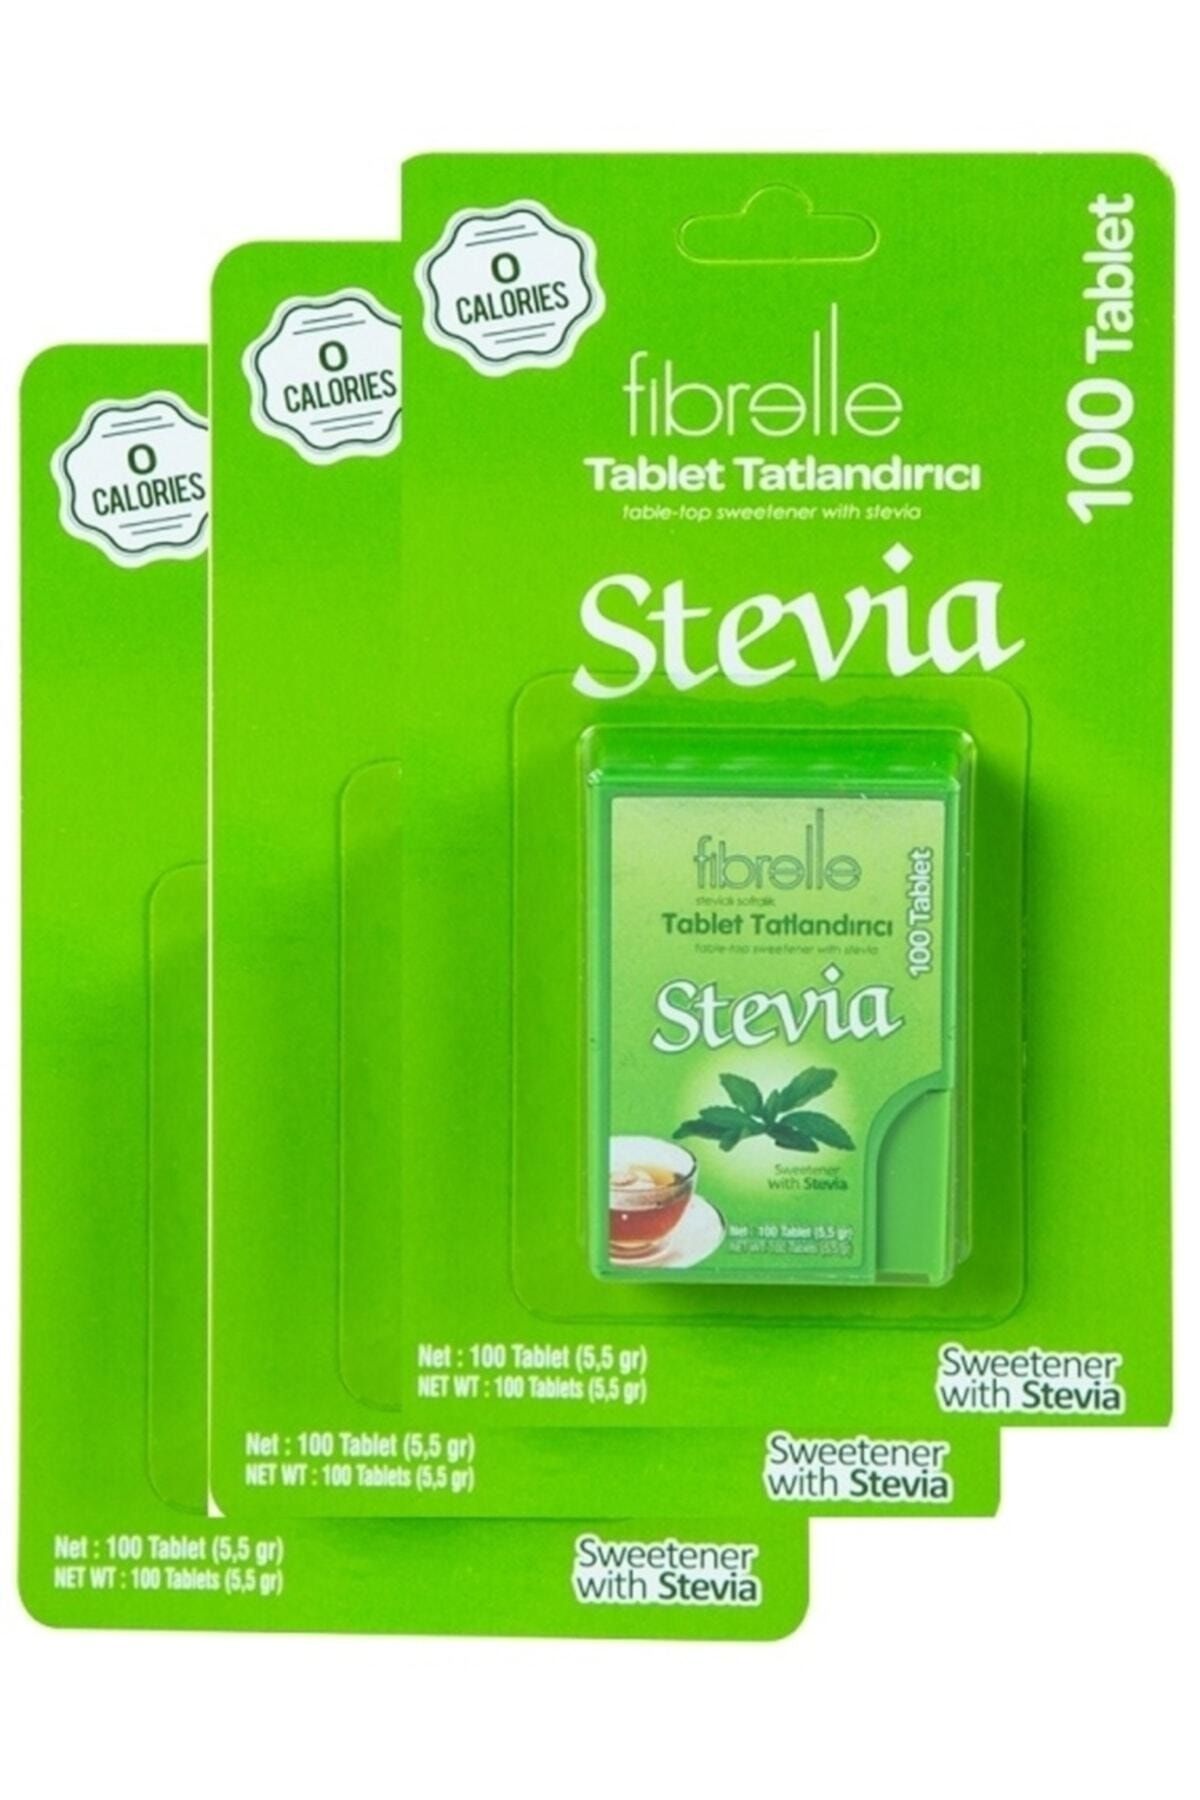 Fibrelle Stevia Lı Tablet Tatlandırıcı 100'lük Kutu 3 Paket